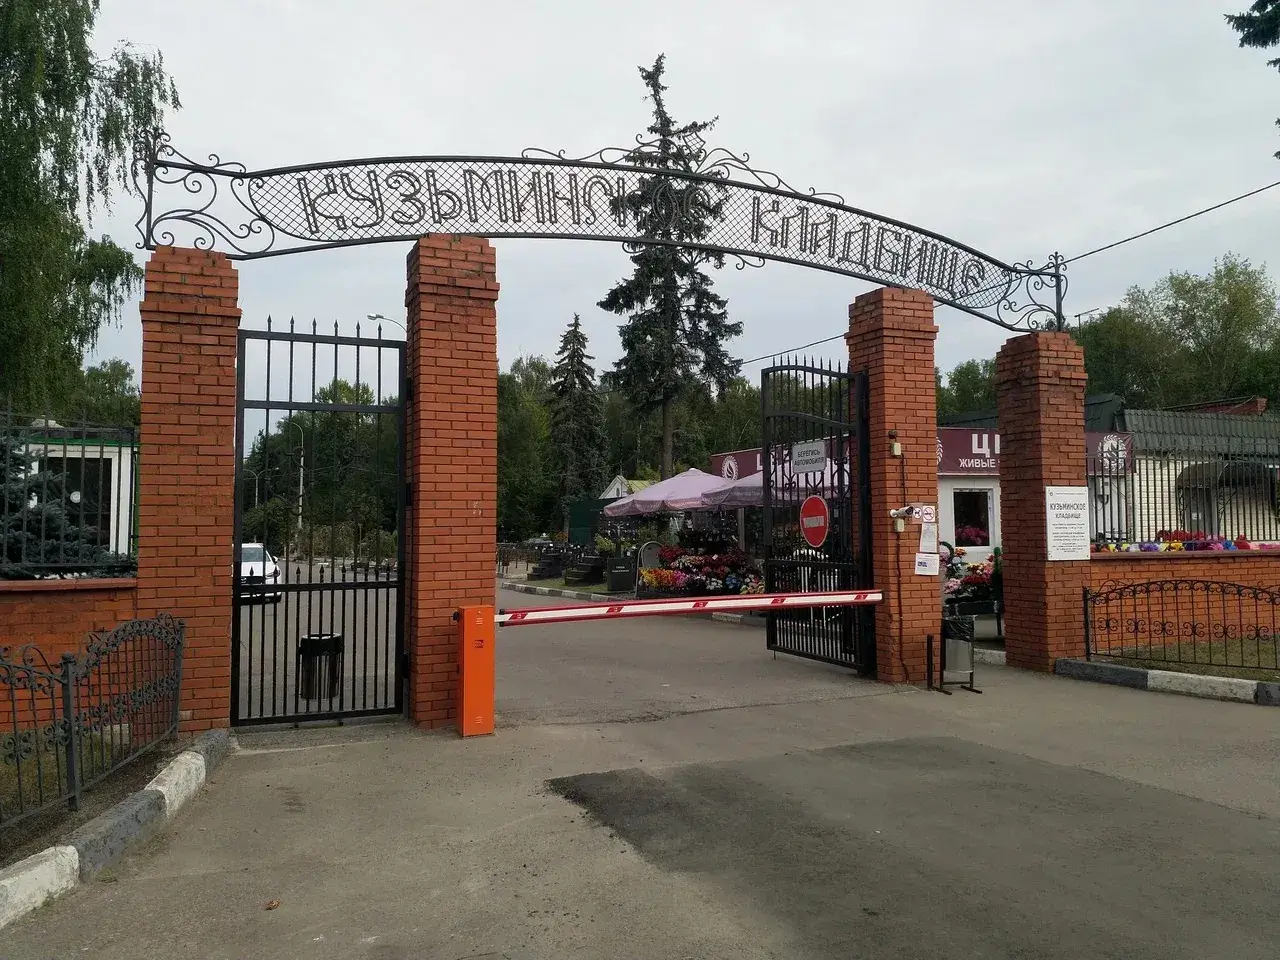 Вход на Кузьминское кладбище